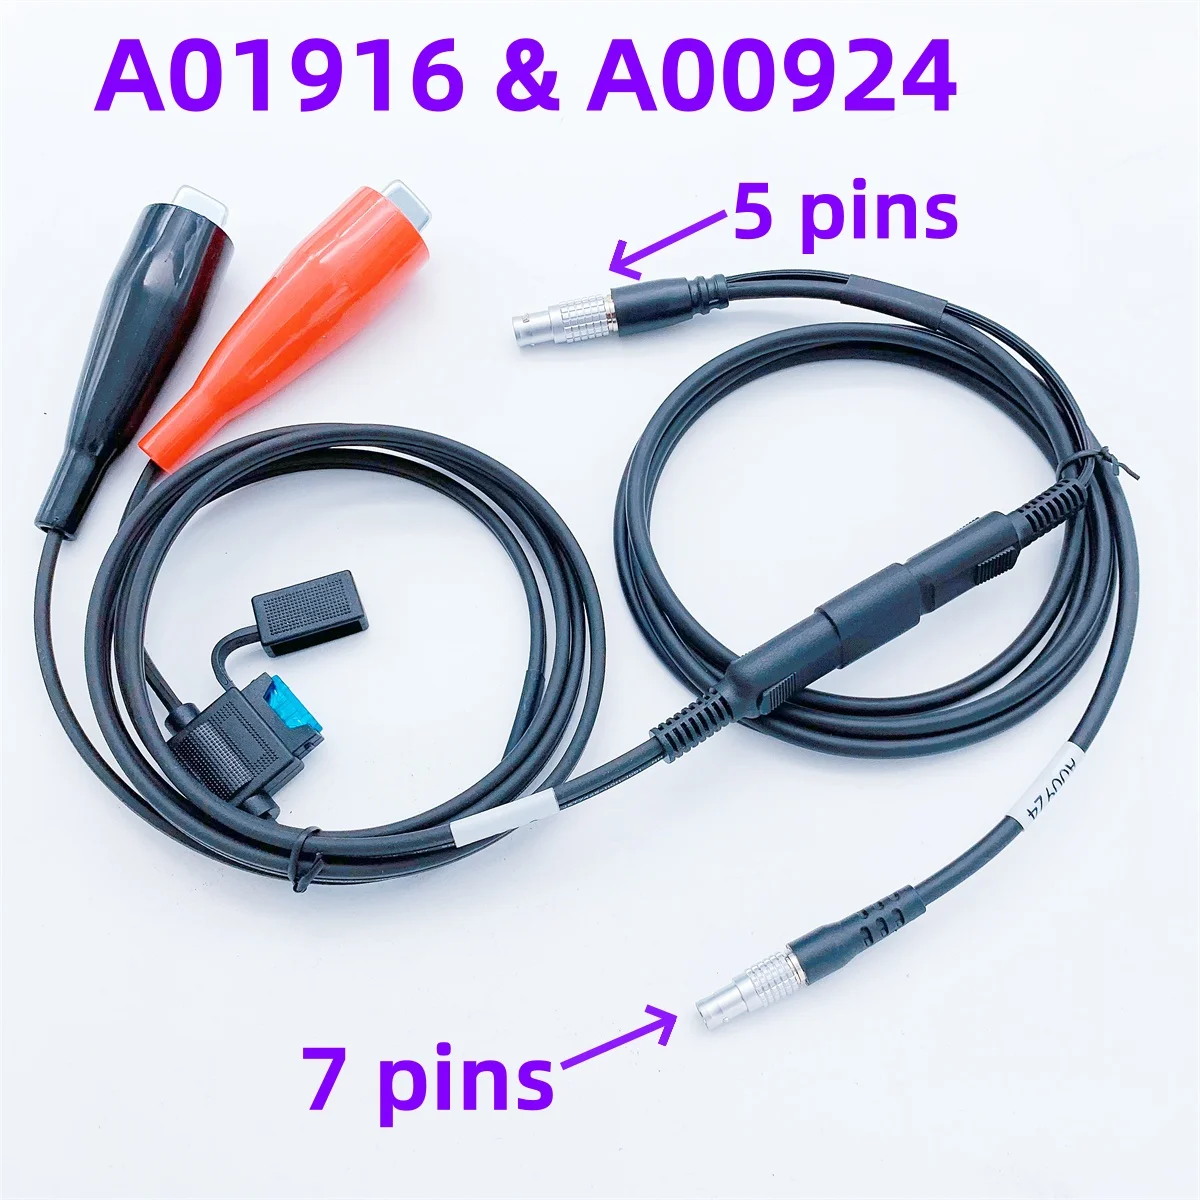 Совершенно новый кабель A00924 & A01916 для Trimble 4700 4800 5700 R4 R5 R6 R8 R10 GPS GNSS приемники к Pacific Crest PDL HPB HPB450